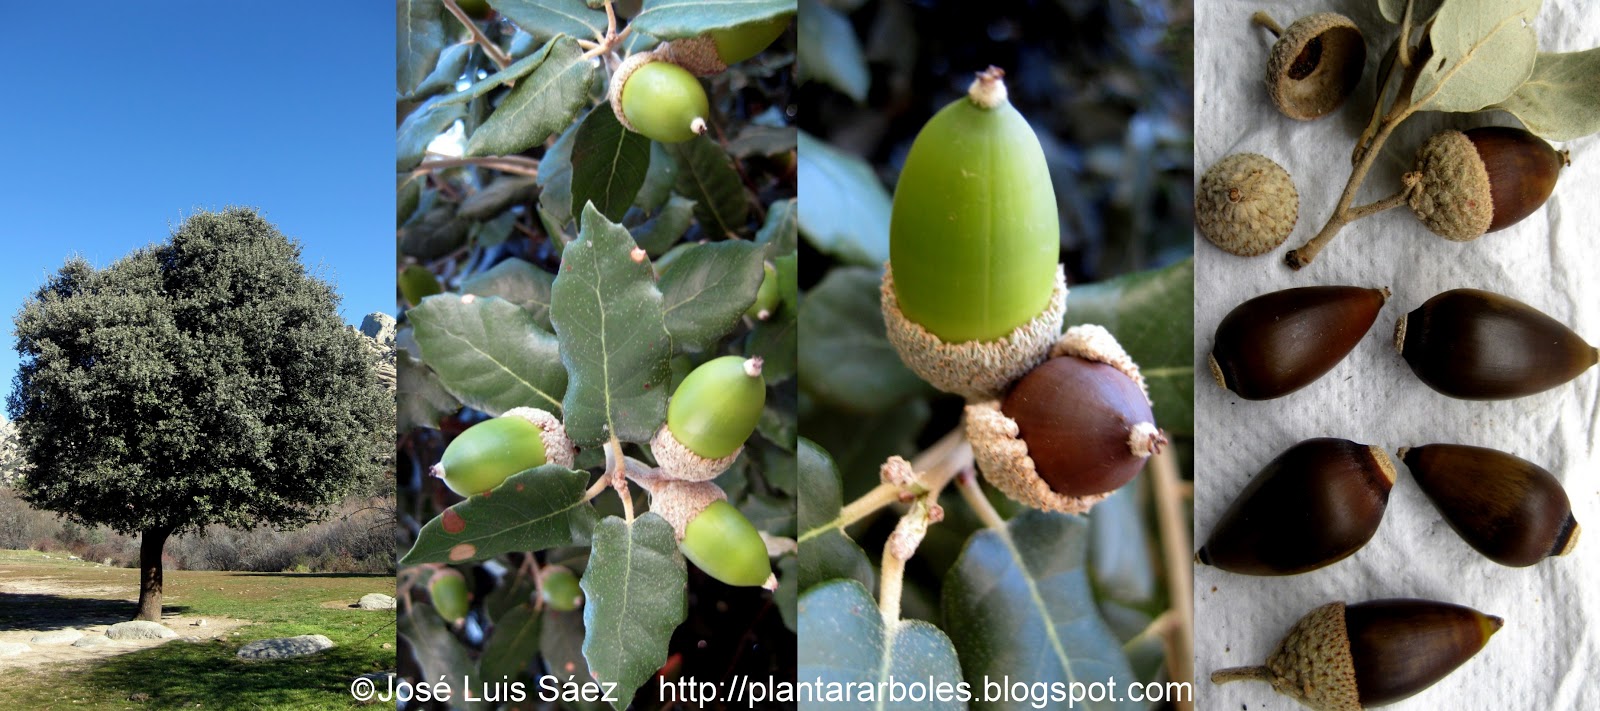 La encina y el fruto que a la vez es la semilla que podemos plantar. Imagen obtenida del blog de José Luis Sáez